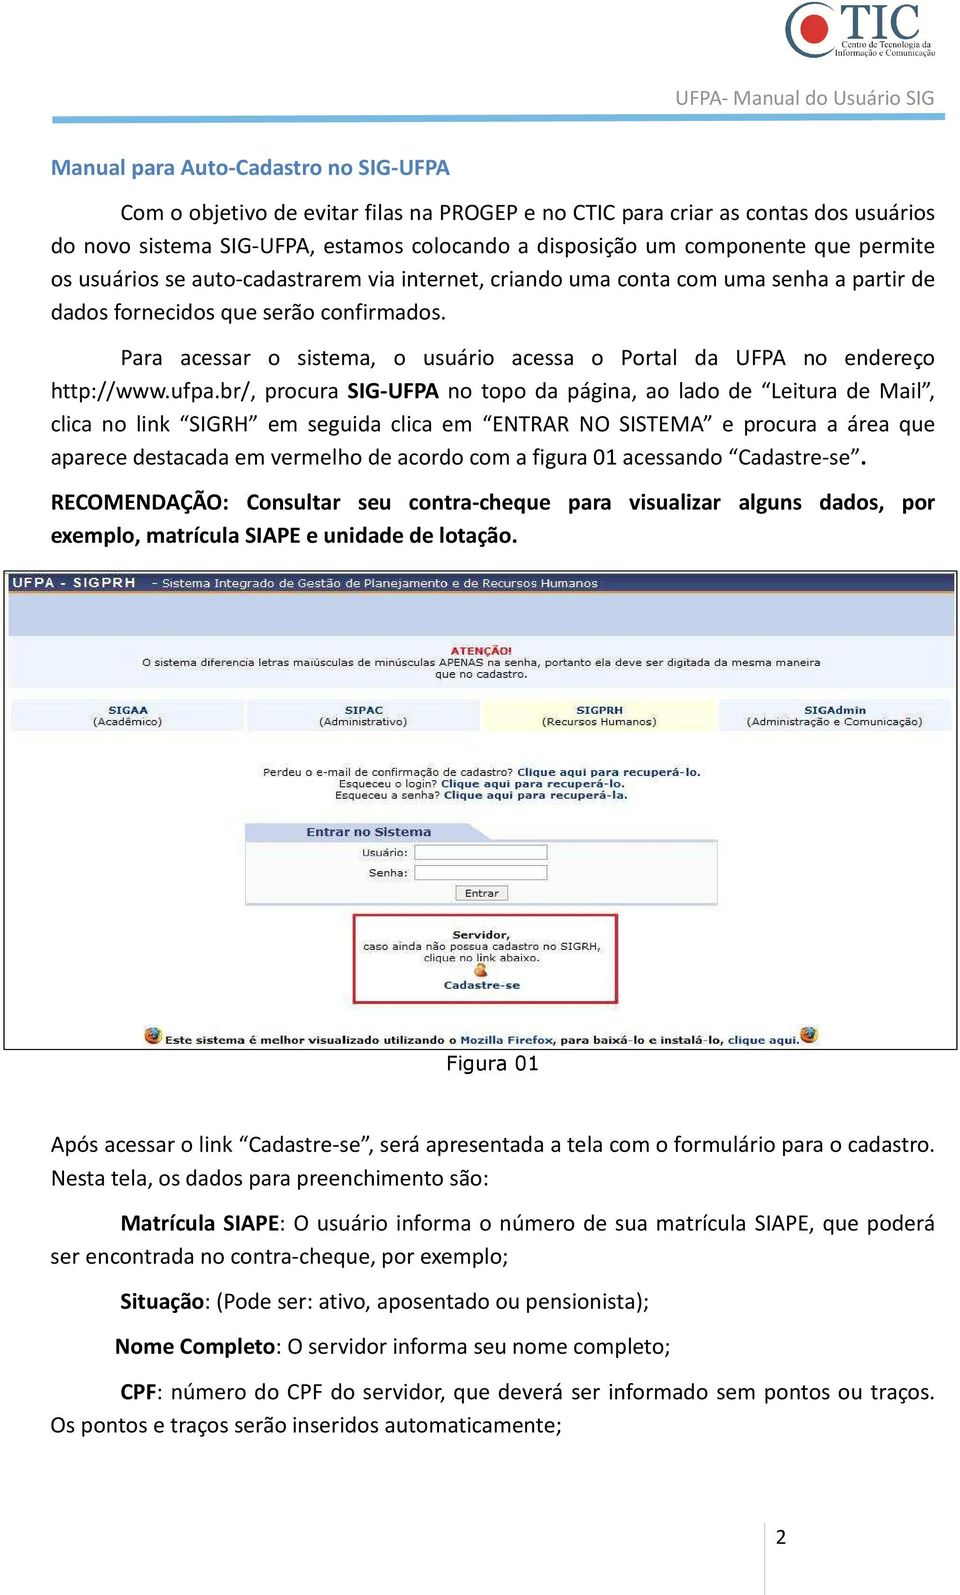 Para acessar o sistema, o usuário acessa o Portal da UFPA no endereço http://www.ufpa.